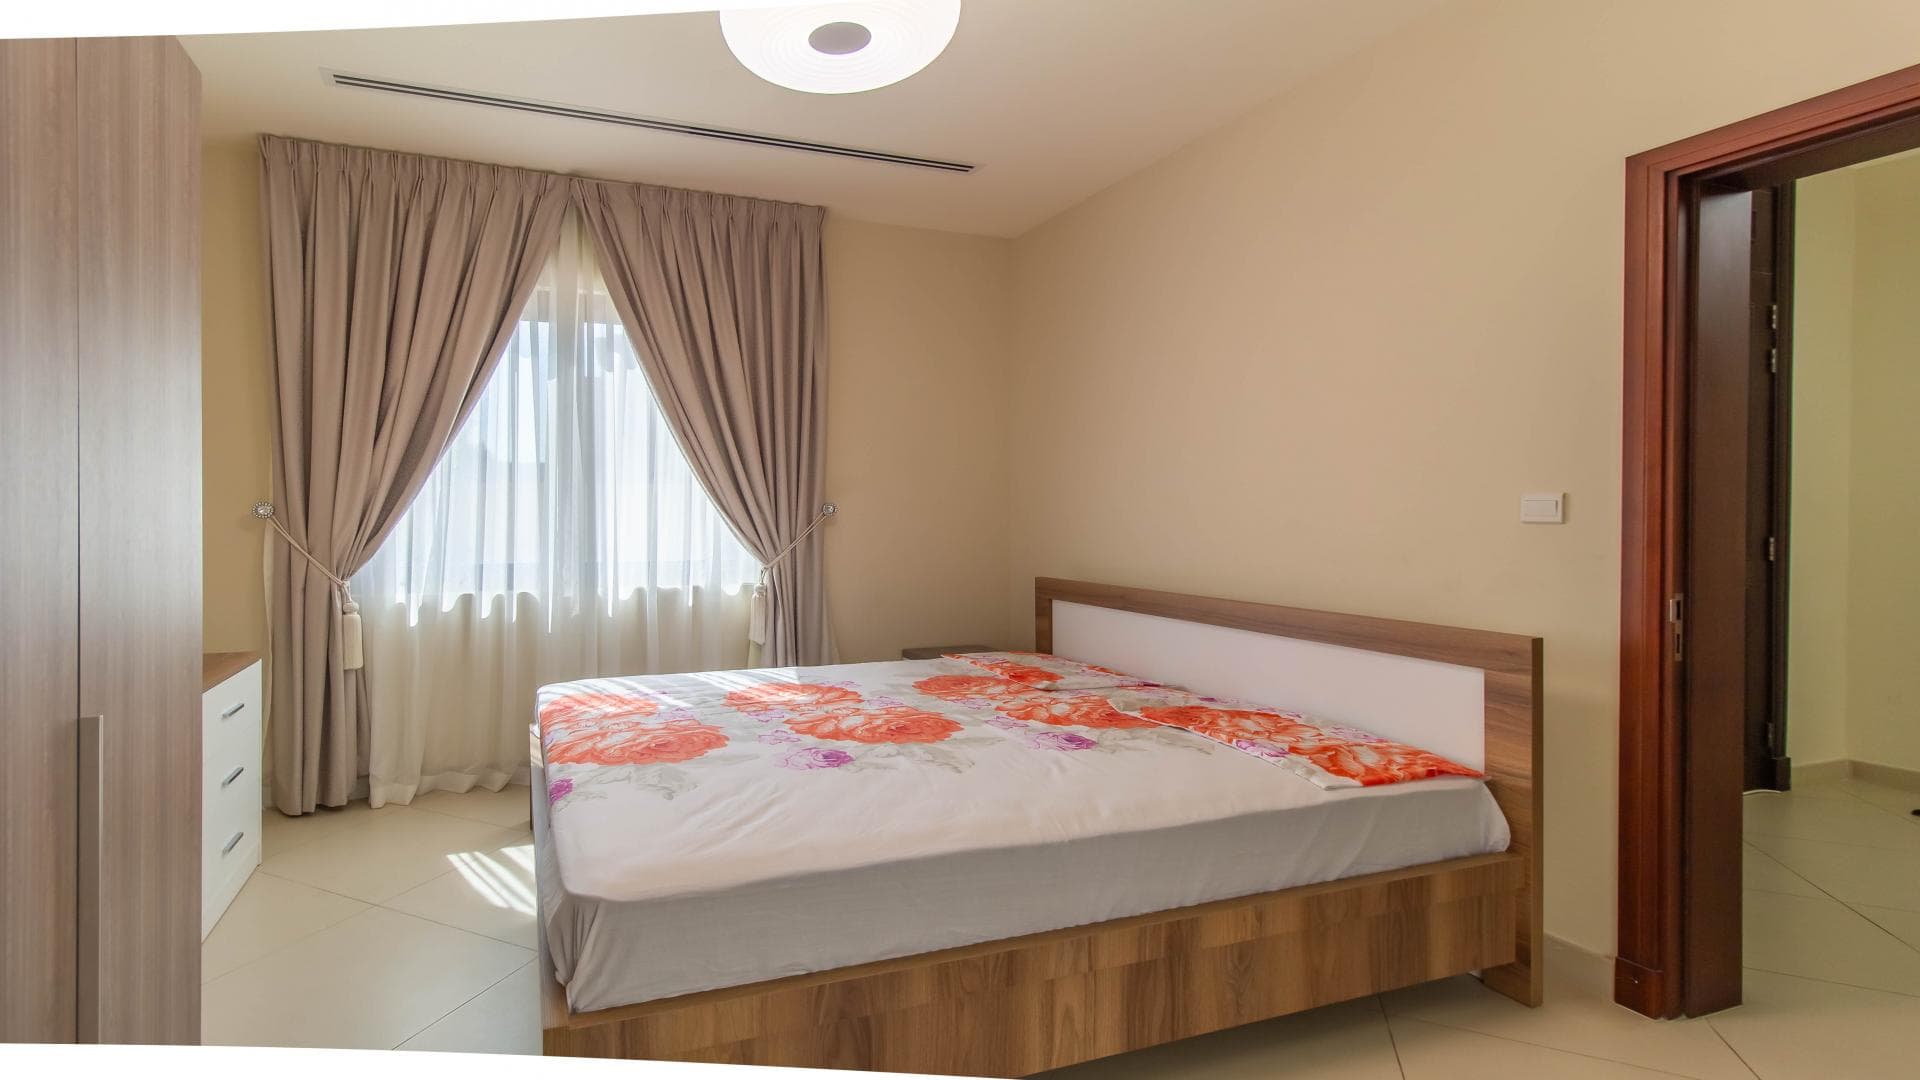 5 Bedroom Villa For Rent Al Bateen Residence Lp27831 20fb3ce362595800.jpg